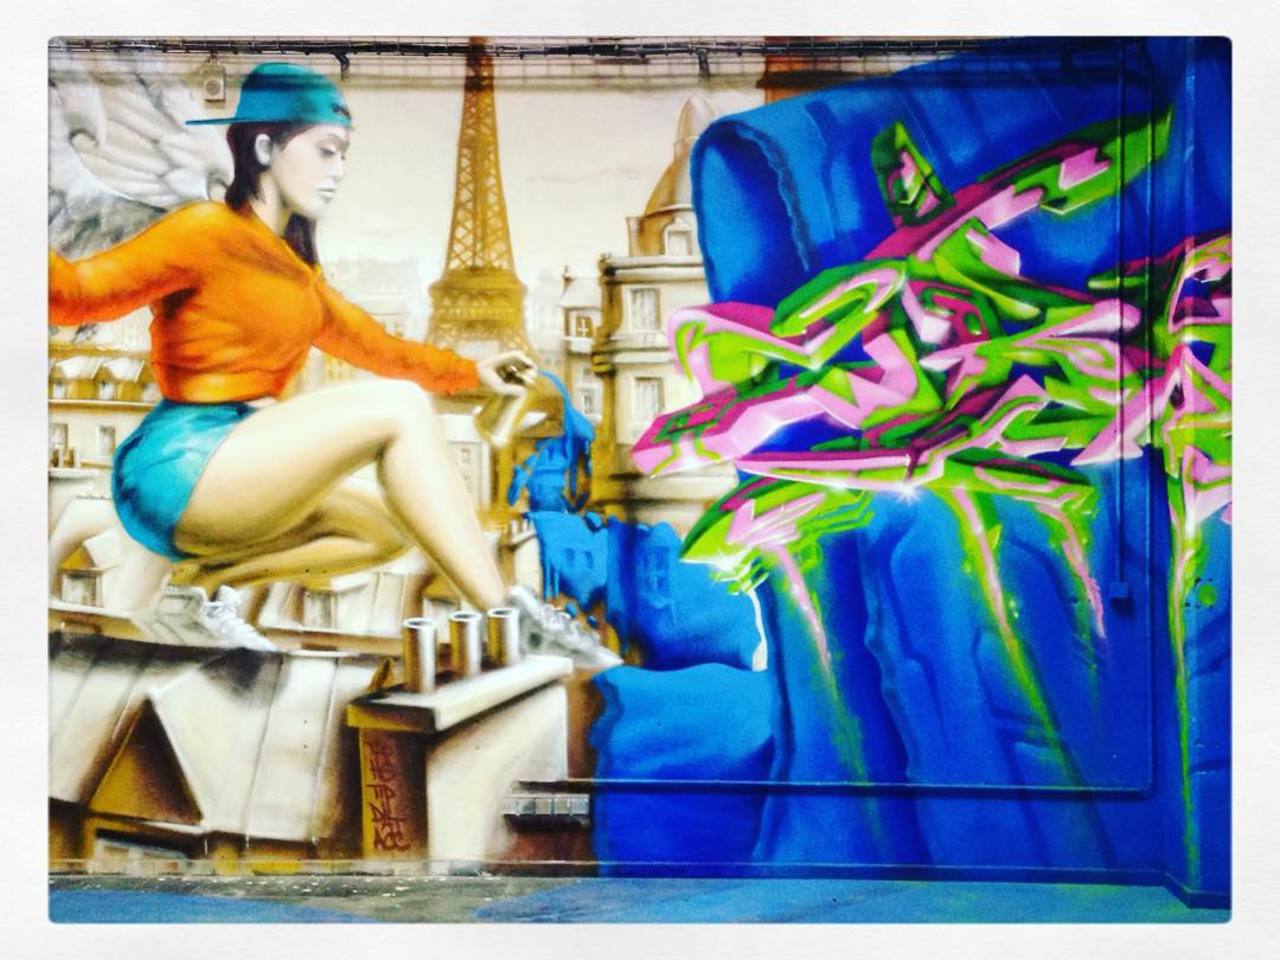 #Paris #graffiti photo by @cibti4987 http://ift.tt/1RdnASs #StreetArt http://t.co/npbNTEzz4x